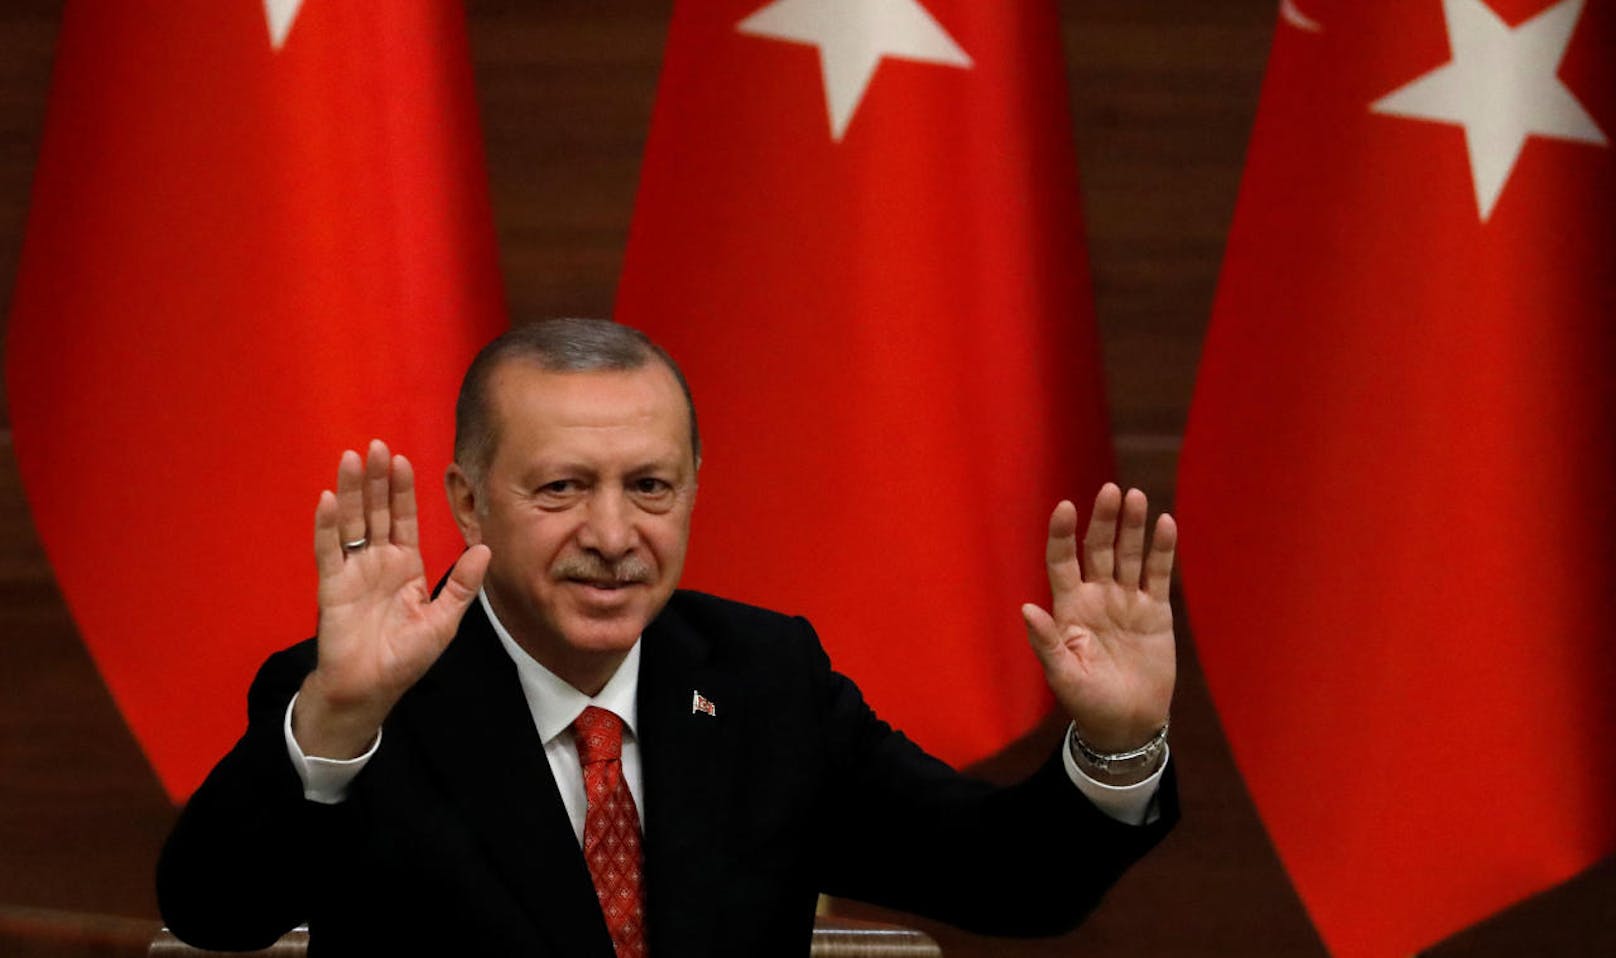 <b>Platz 38: Türkei</b>
Der türkische Präsident Recep Tayyip Erdogan bekommt pro Jahr <b>67.600 Euro</b> an Gehalt. Der durchschnittliche Türke verdient jährlich ein Drittel davon, nämlich 22.700 Euro.